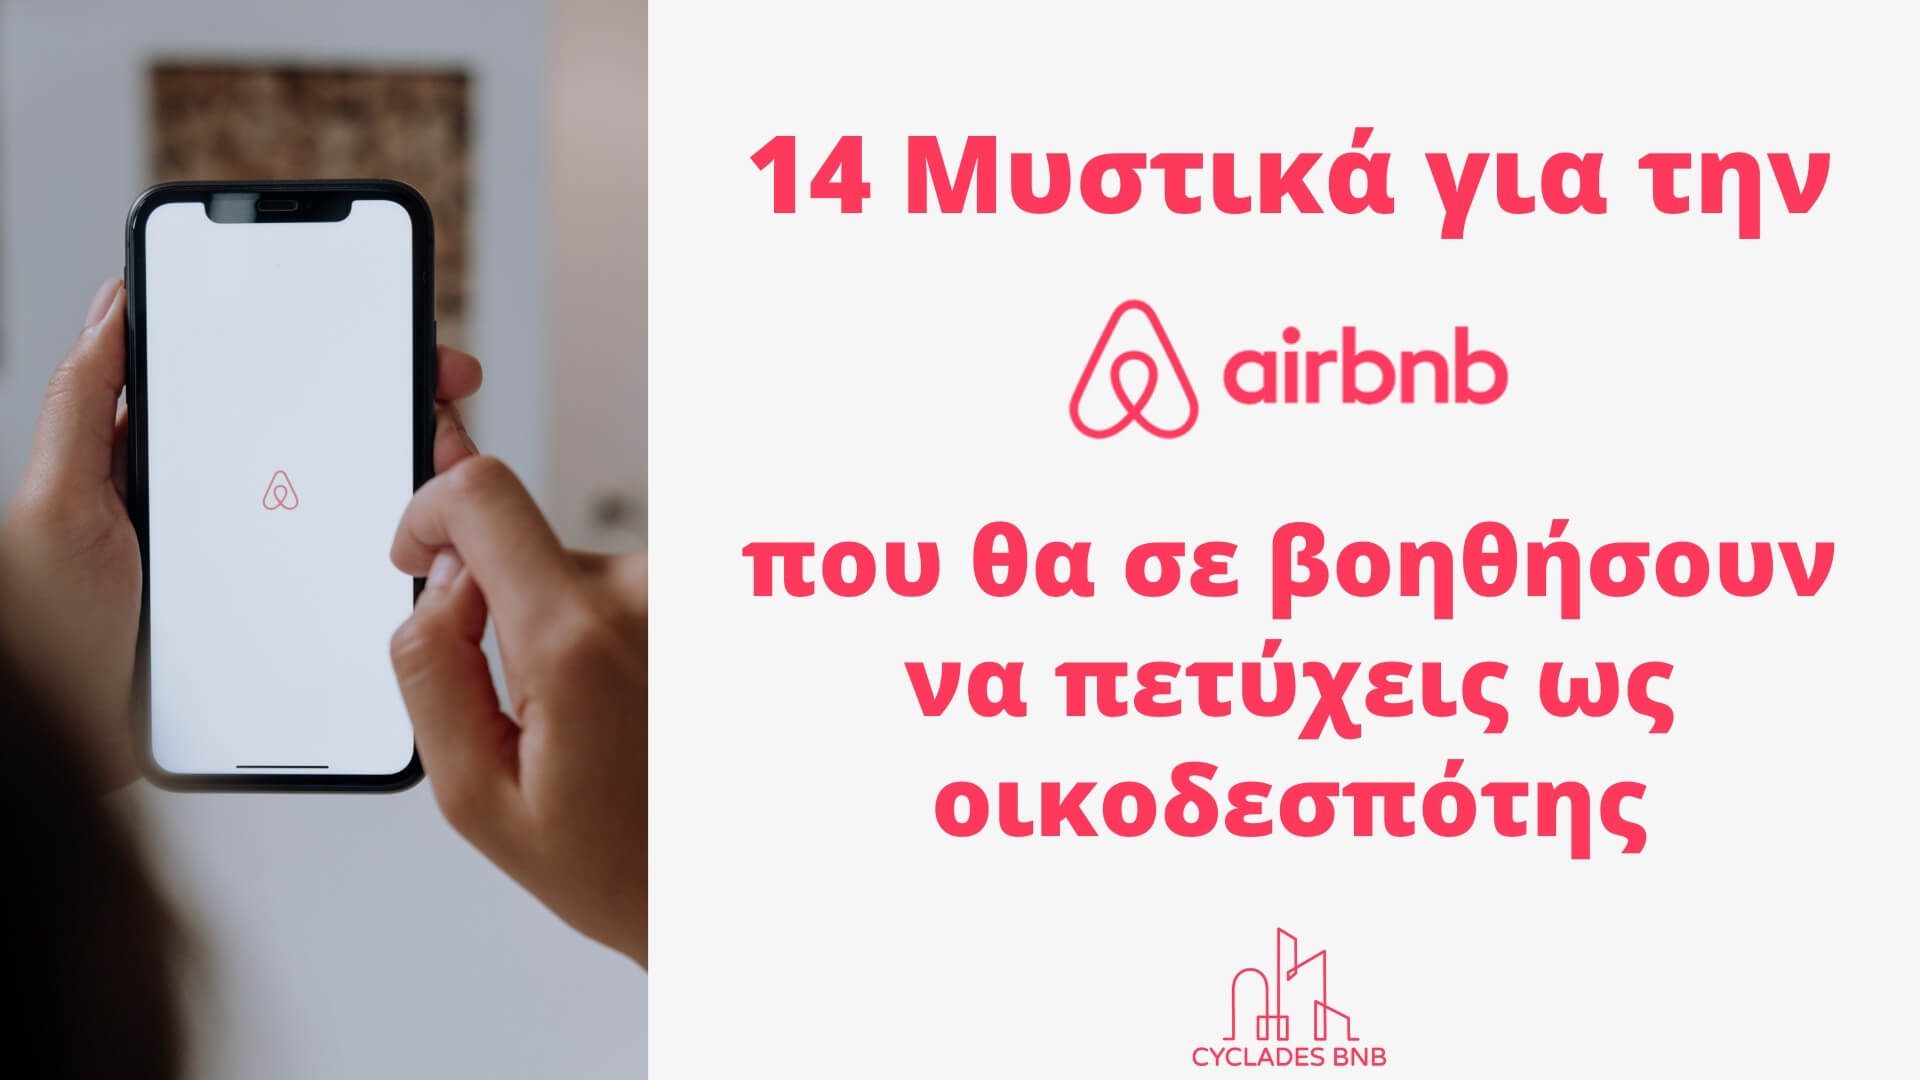 Μυστικά της Airbnb για οικοδεσπότες